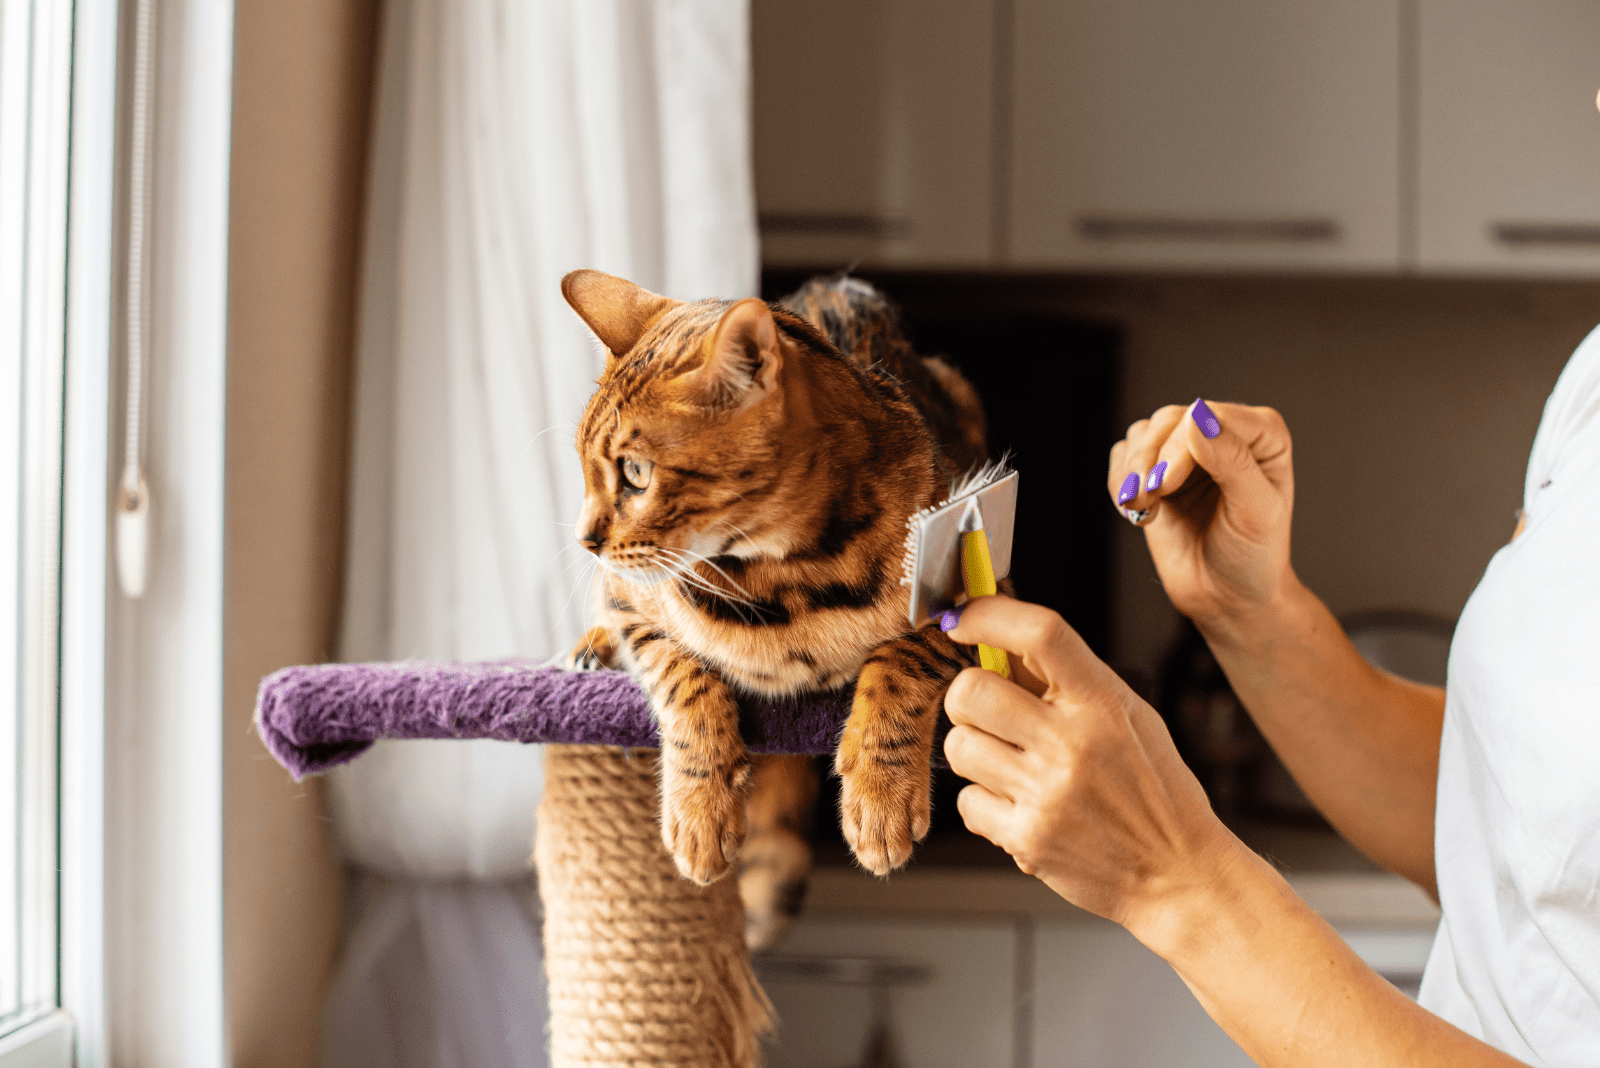 bengal cat enjoys brushing